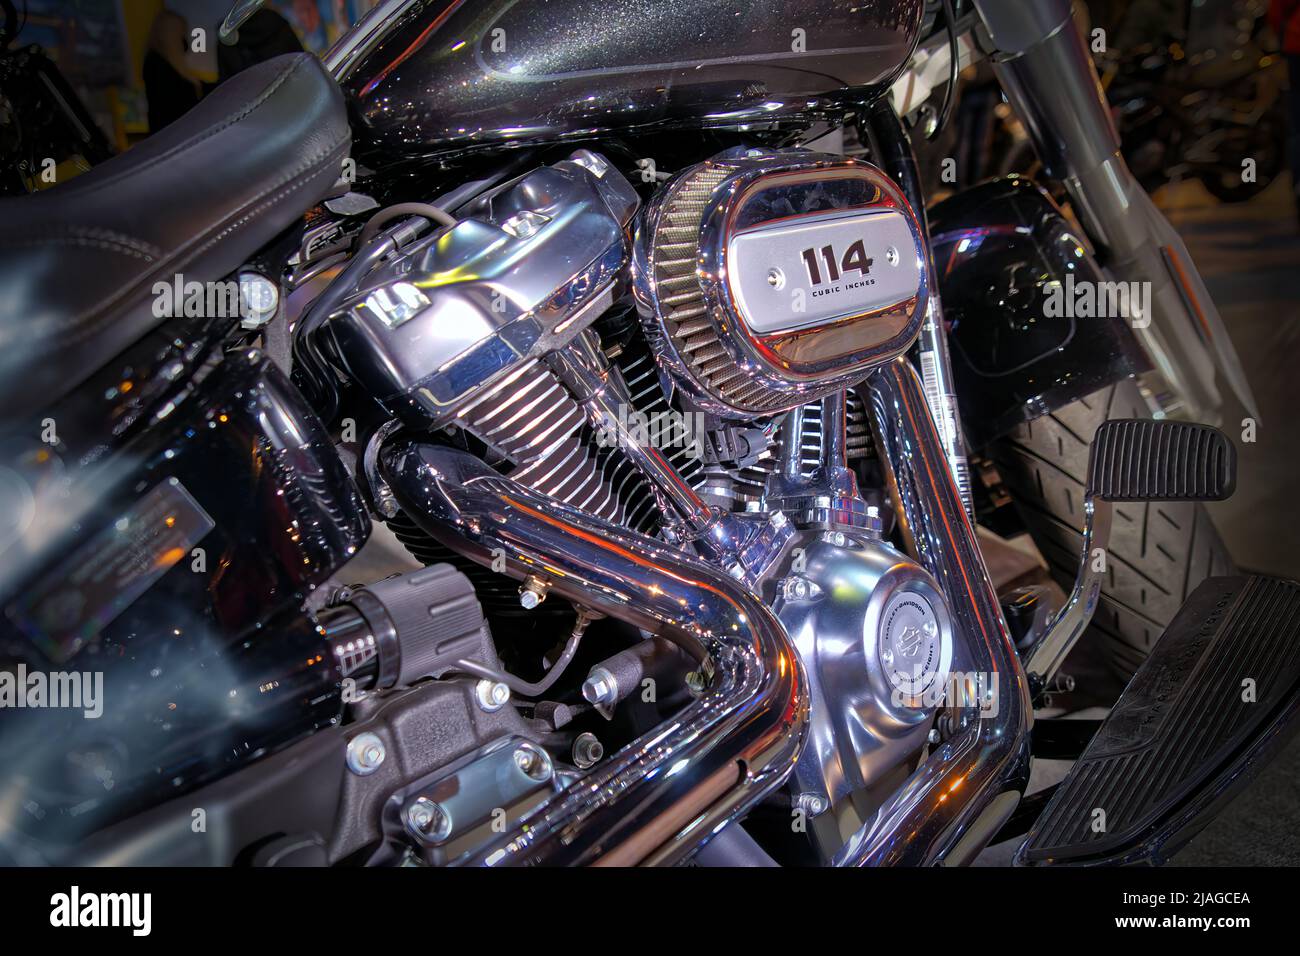 Gros plan du moteur Harley Davidson sur une moto modèle 114 à Braunschweig, Allemagne, 20 mars 2022. Banque D'Images